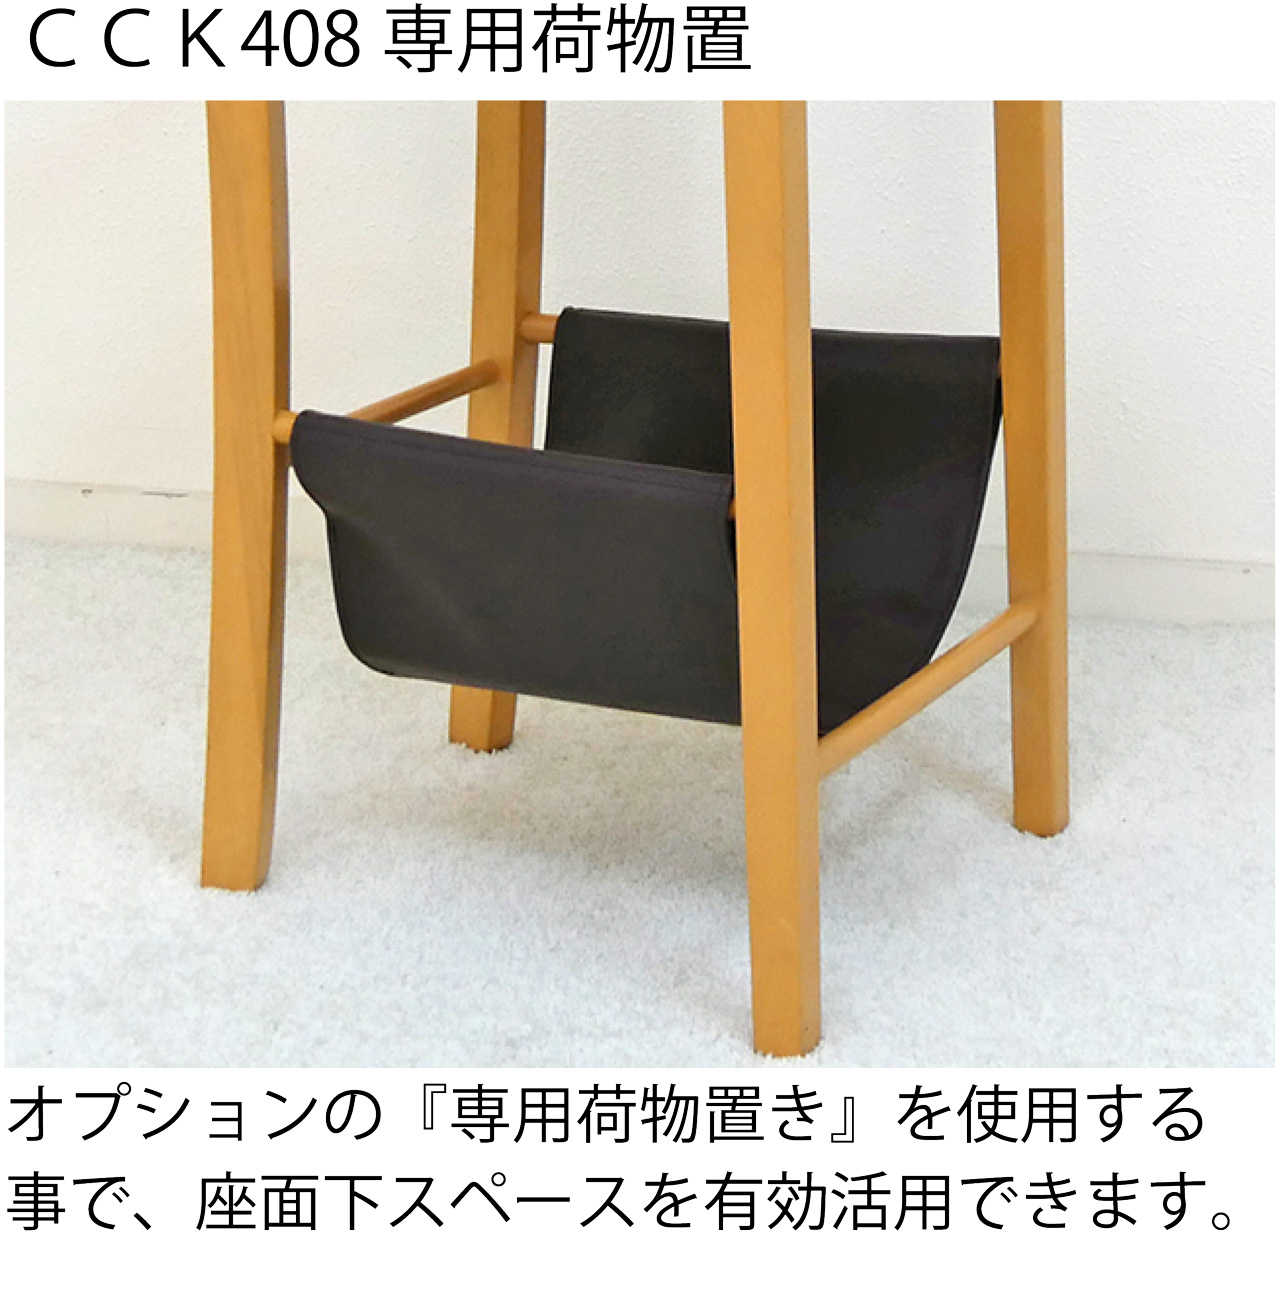 木製カウンターチェア 座面高60cm CCK408 ナチュラル ビーチ色 